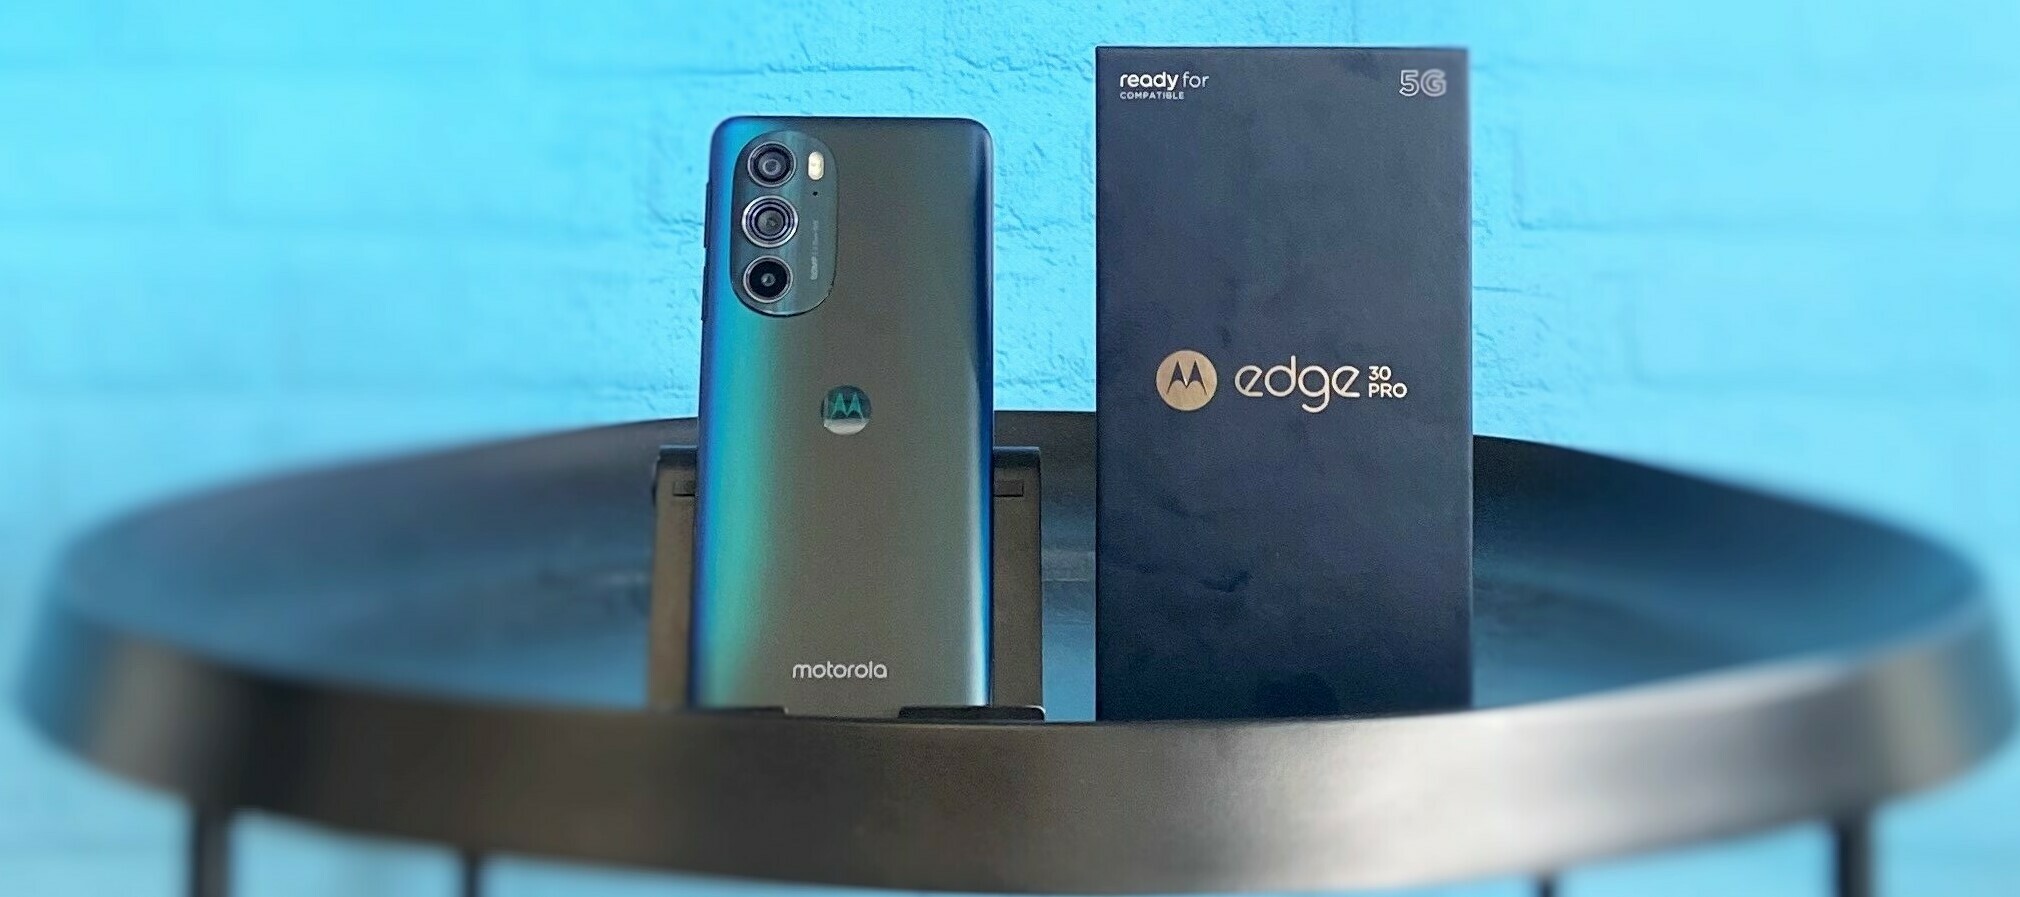 Tauche in die Welt vom Motorola Edge 30 Pro ein